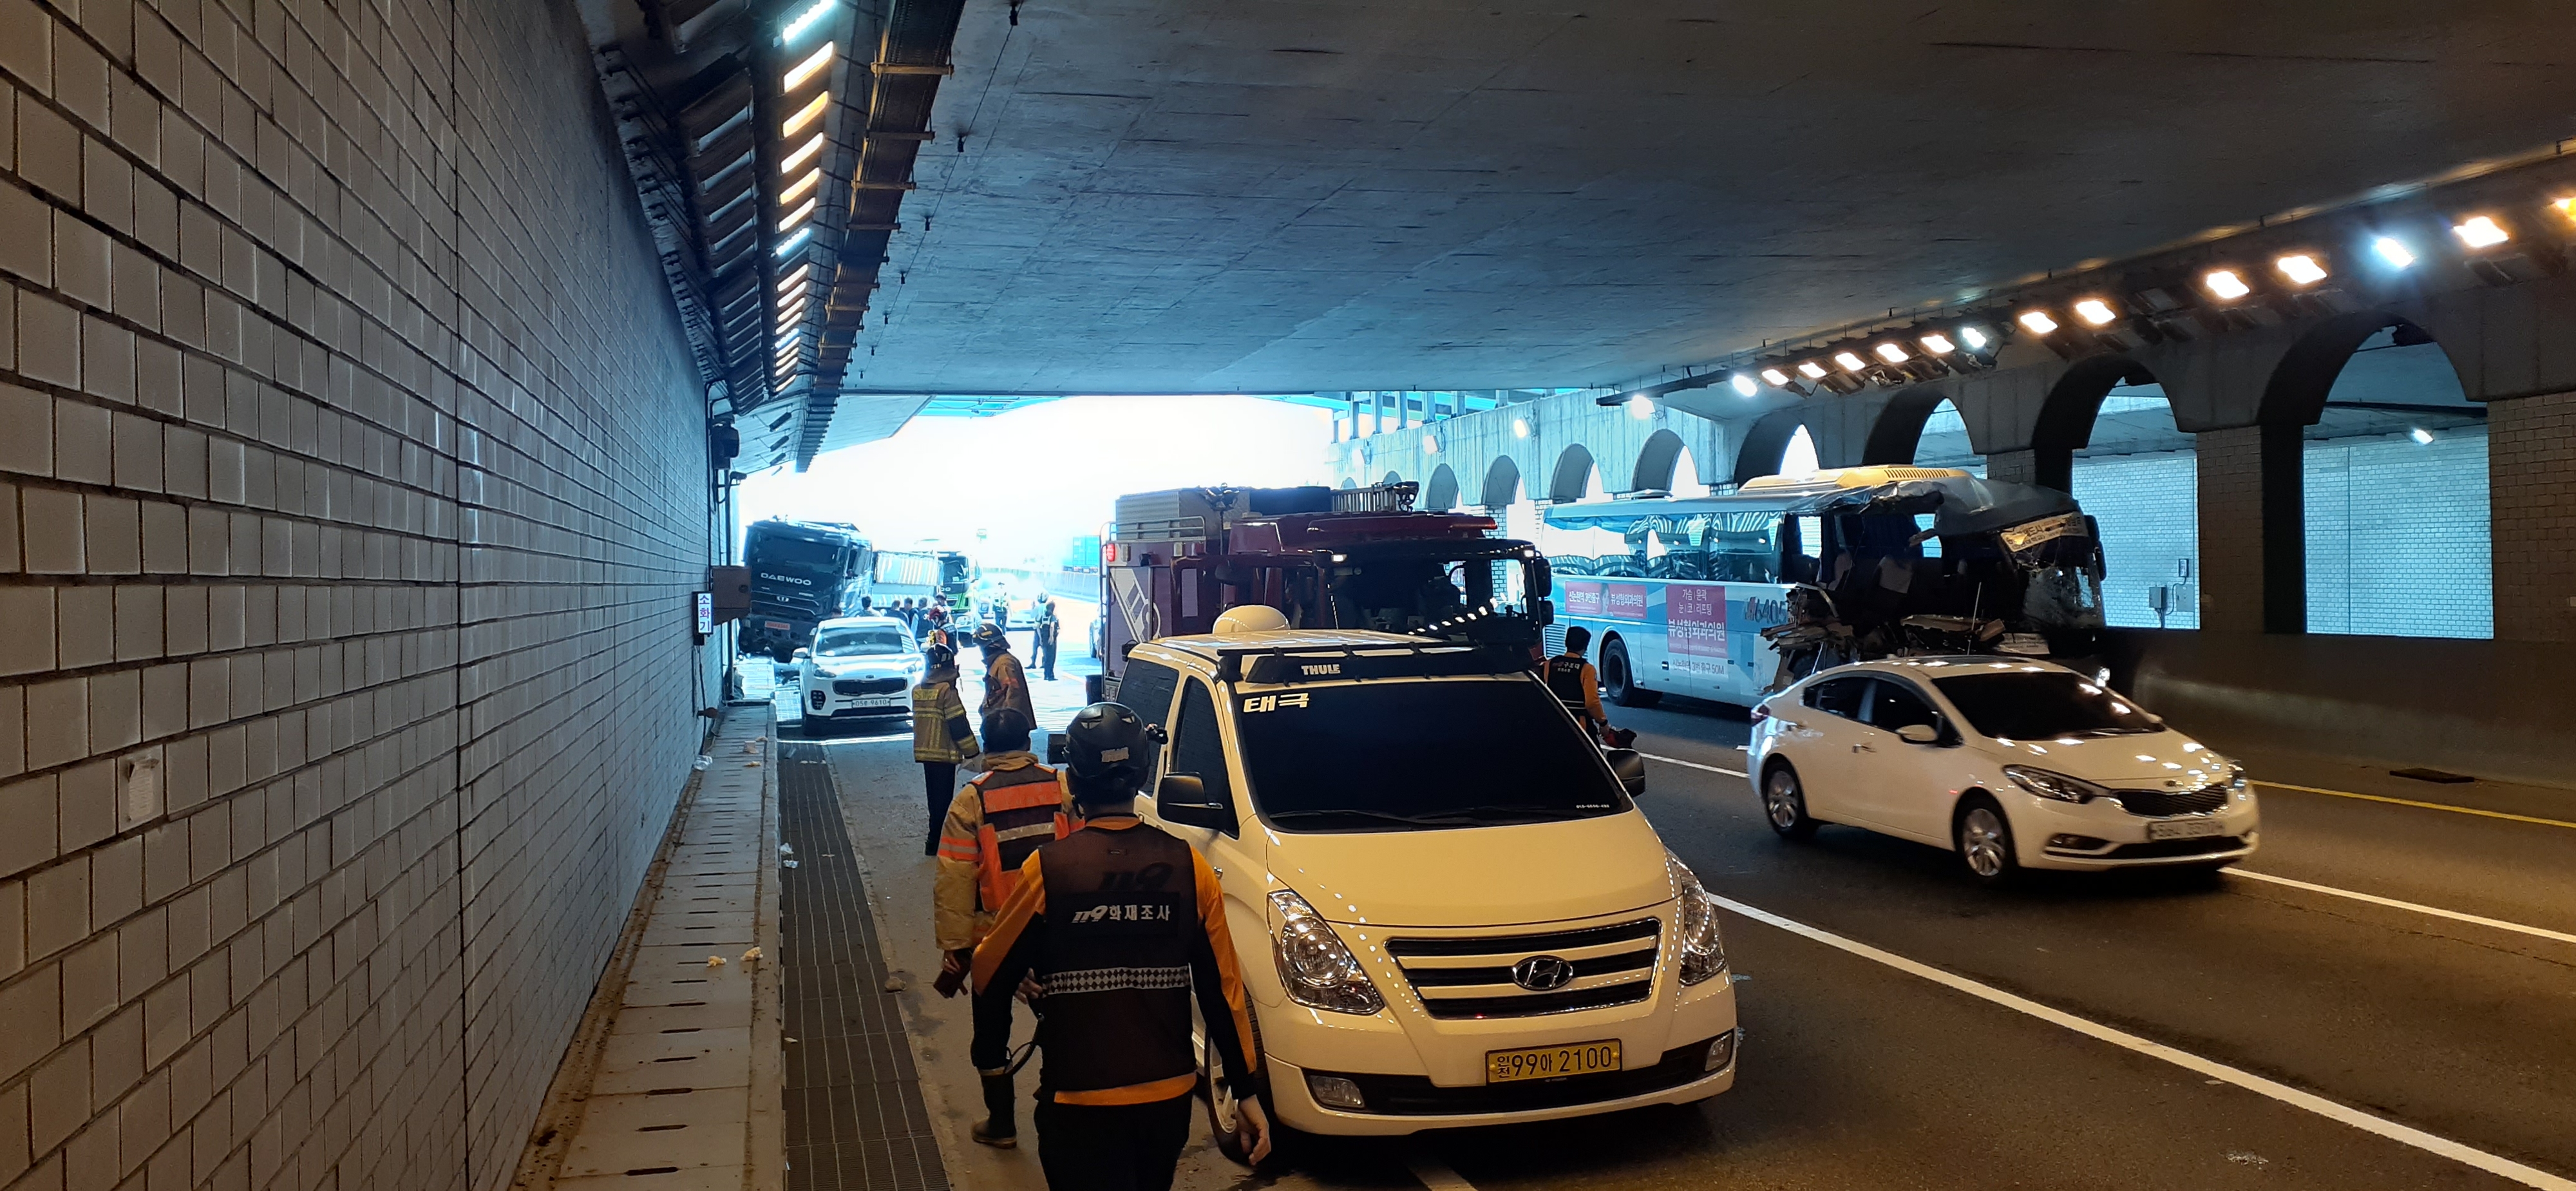 광역버스와 트럭이 추돌해 28명이 다친 인천 고잔지하차도 모습. 인천소방본부 제공.